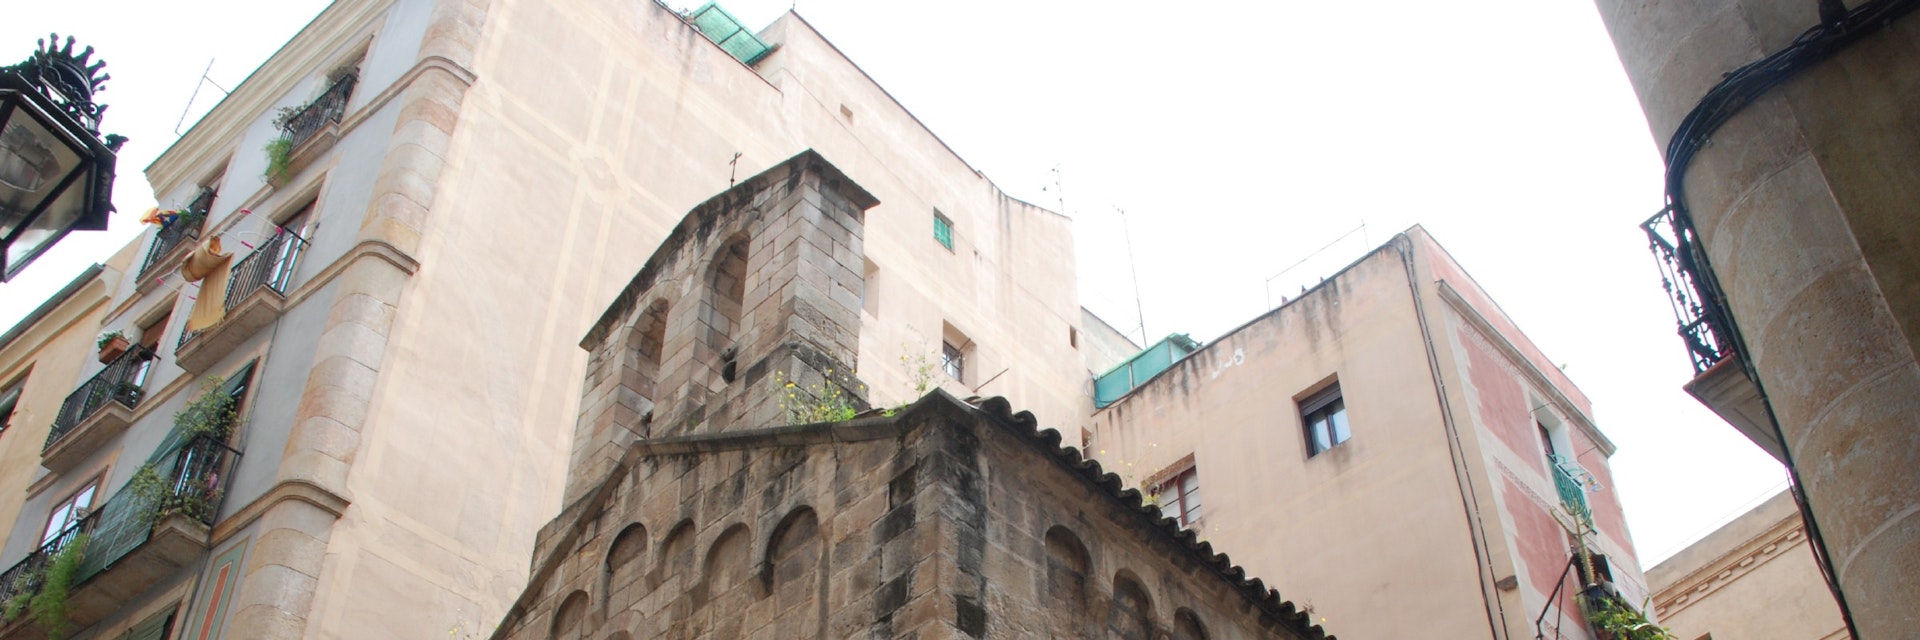 Facade of Capella d'en Marcús